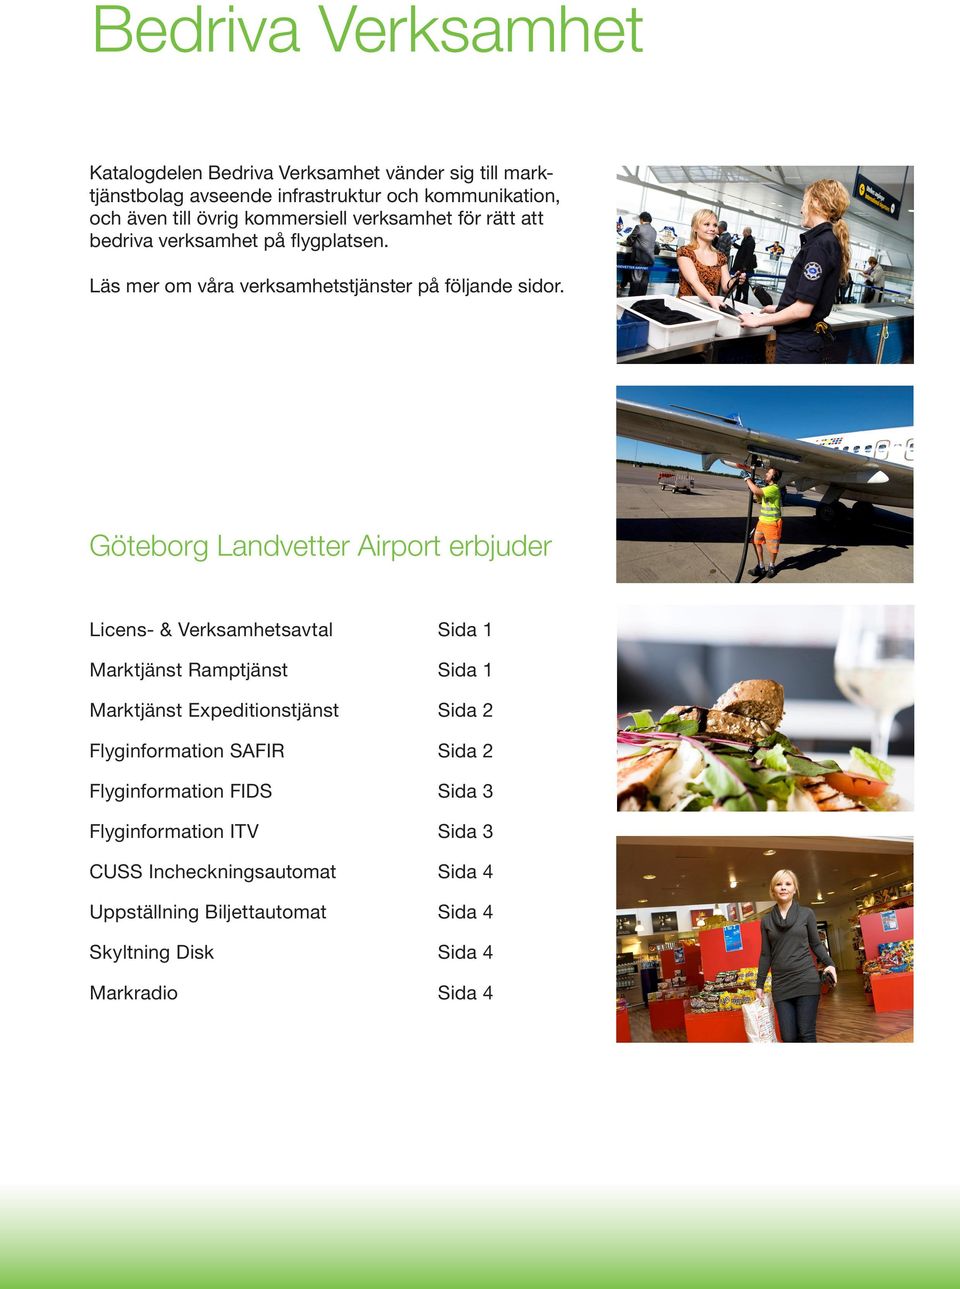 Göteborg Landvetter Airport erbjuder Licens- & Verksamhetsavtal Sida 1 Marktjänst Ramptjänst Sida 1 Marktjänst Expeditionstjänst Sida 2